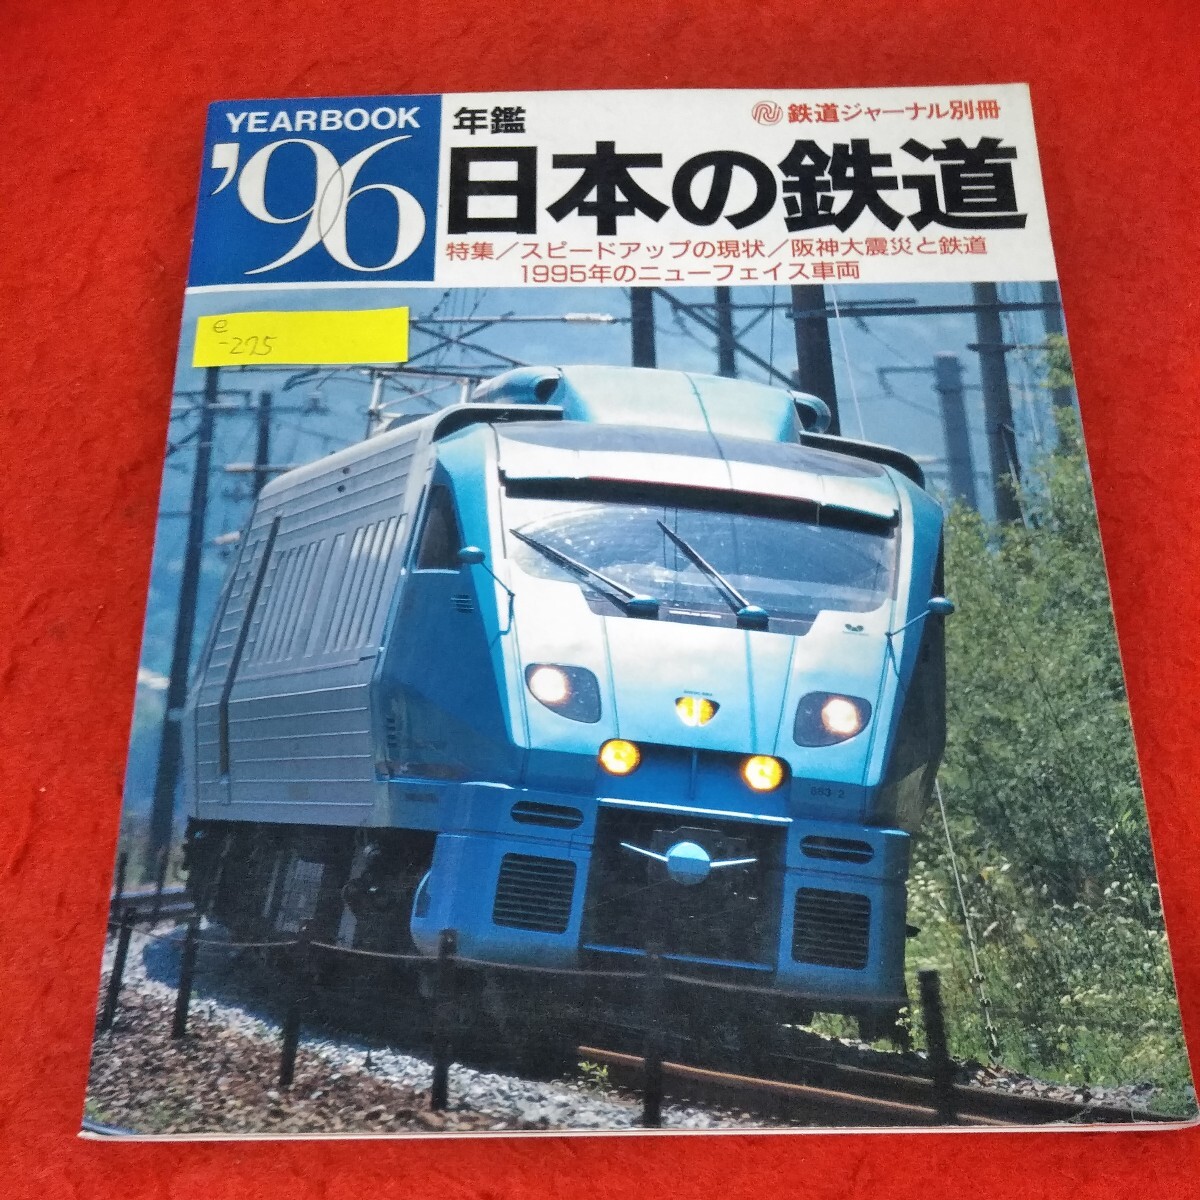 E-275 Railway Journal Отдельный объем ежегодный таблица '96 Японская железная дорога Jr Kyushu Sonic 883 Серия текущего состояния Великое землетрясение и железная дорога Ханшин * 3